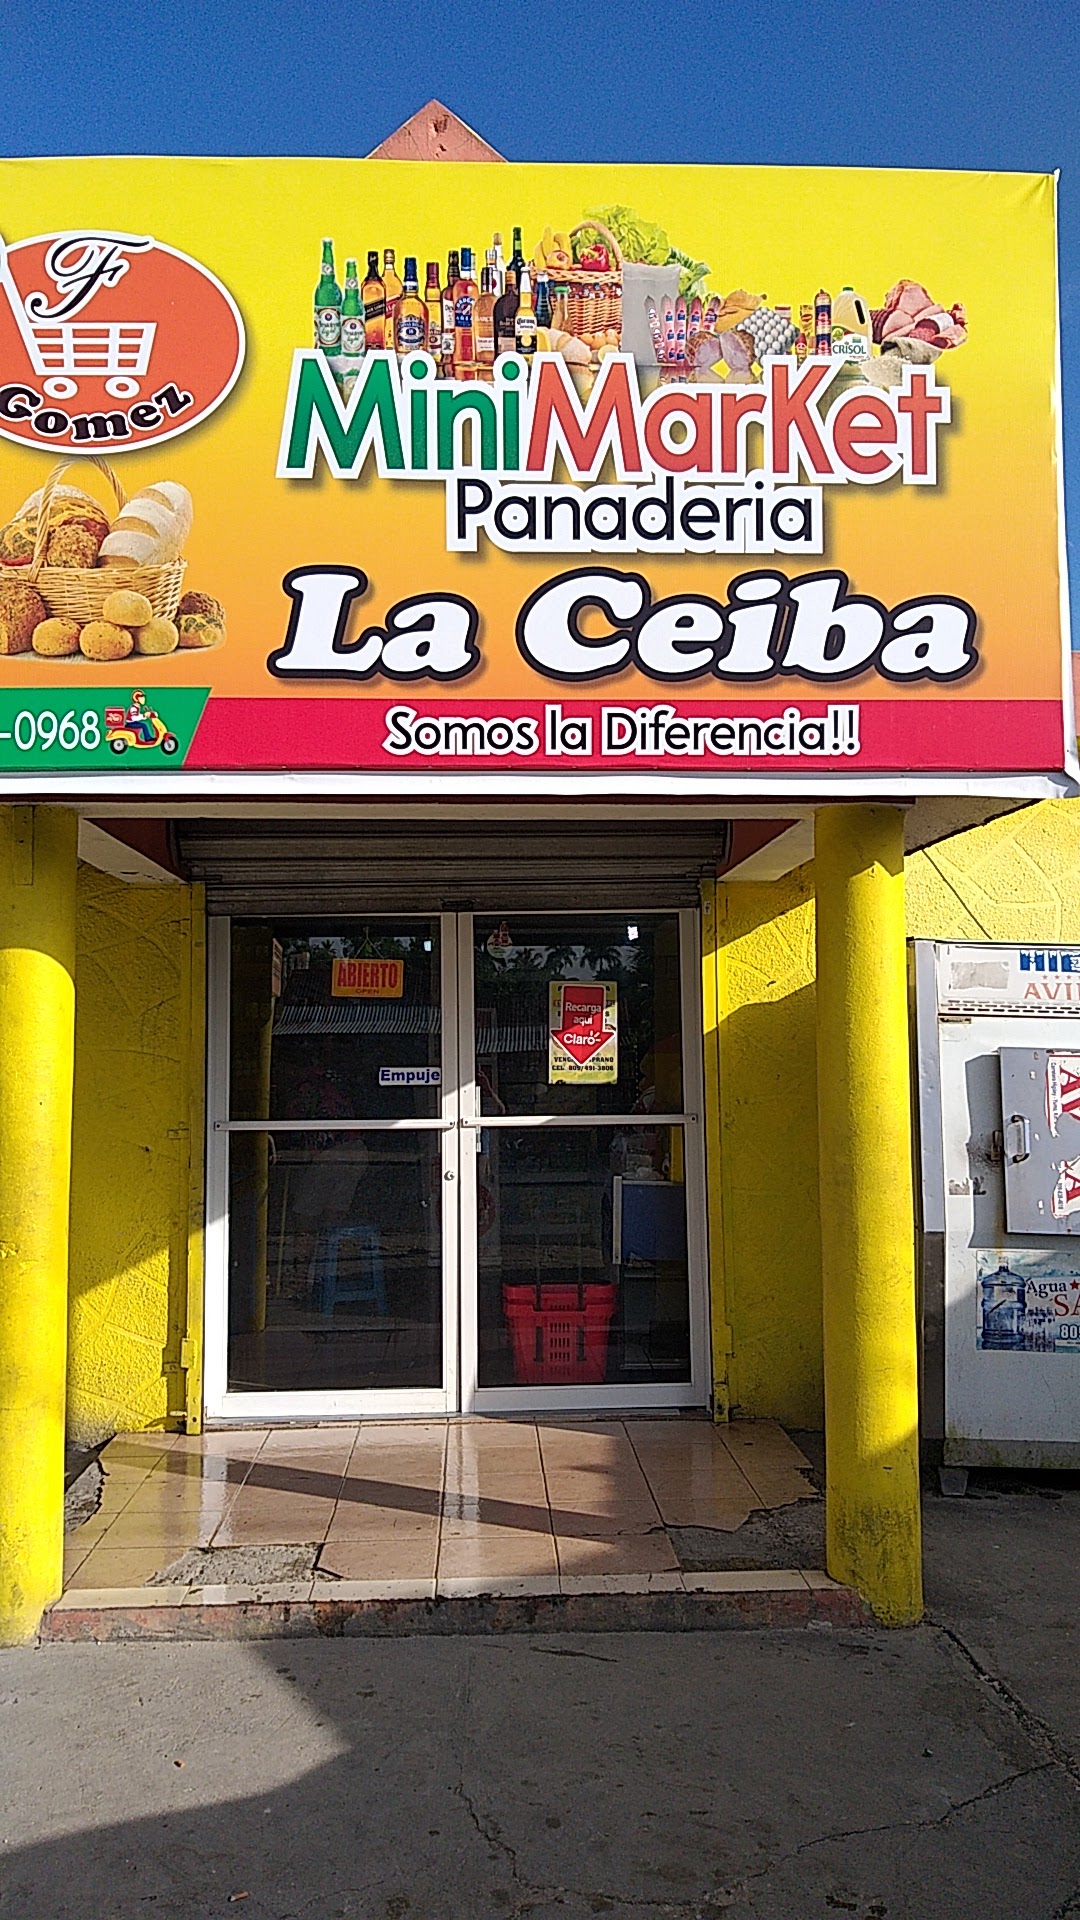 Mini-market La ceiba